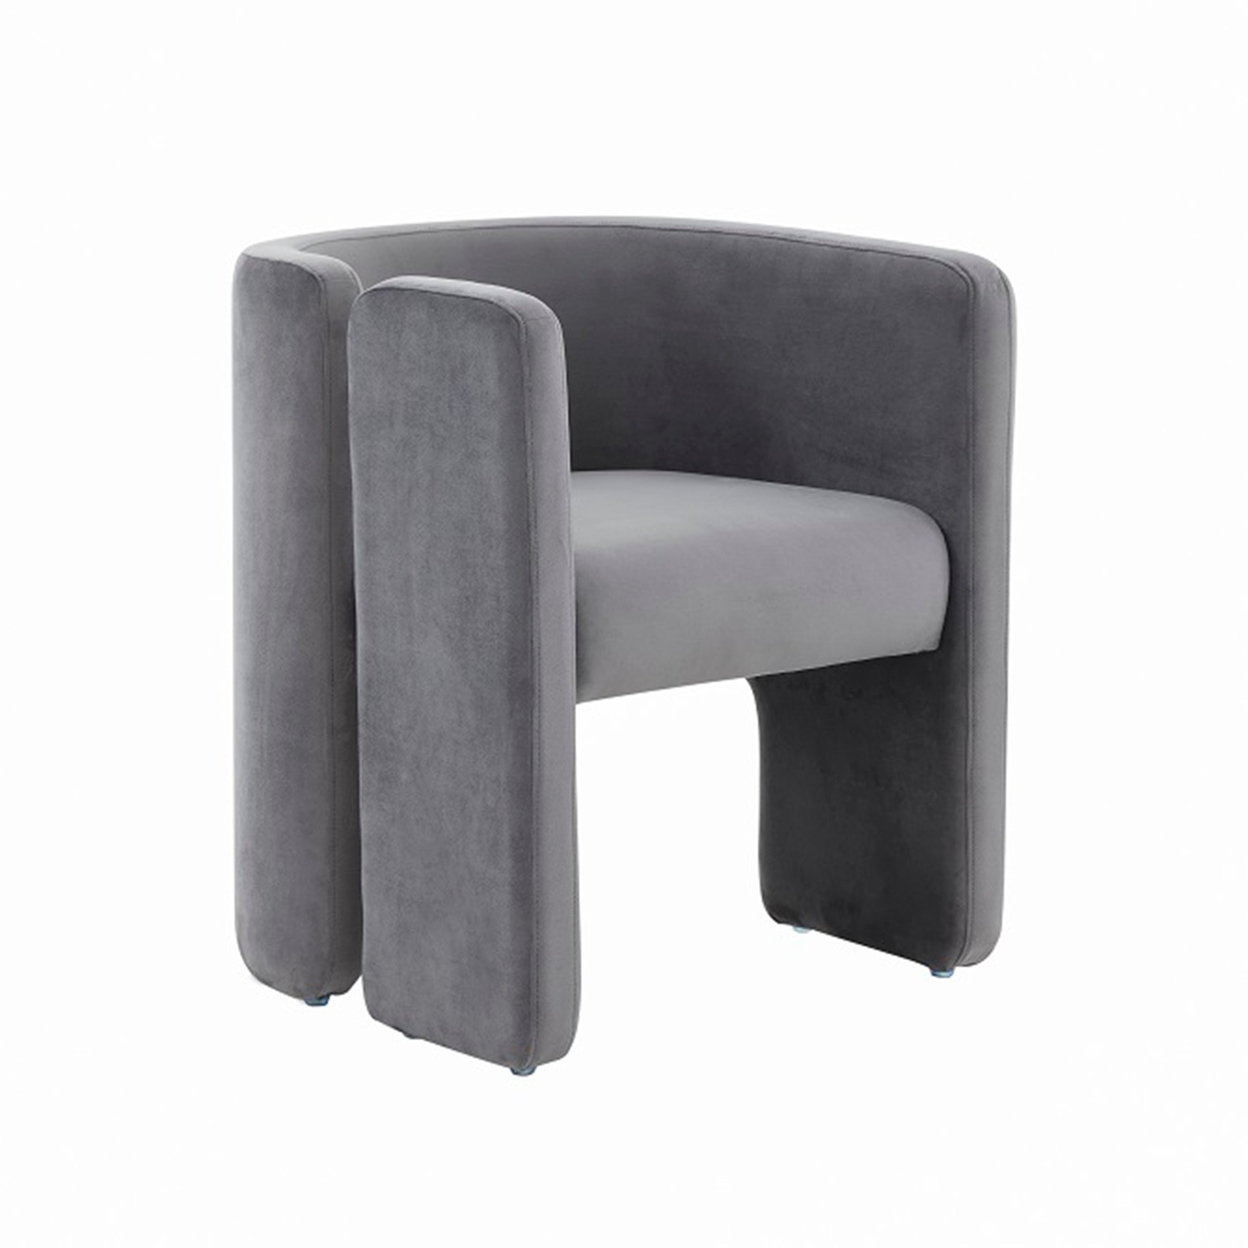 Cid 24 Inch Accent Chair, Soft Gray Velvet, Curved Backrest, Panel Base- Saltoro Sherpi